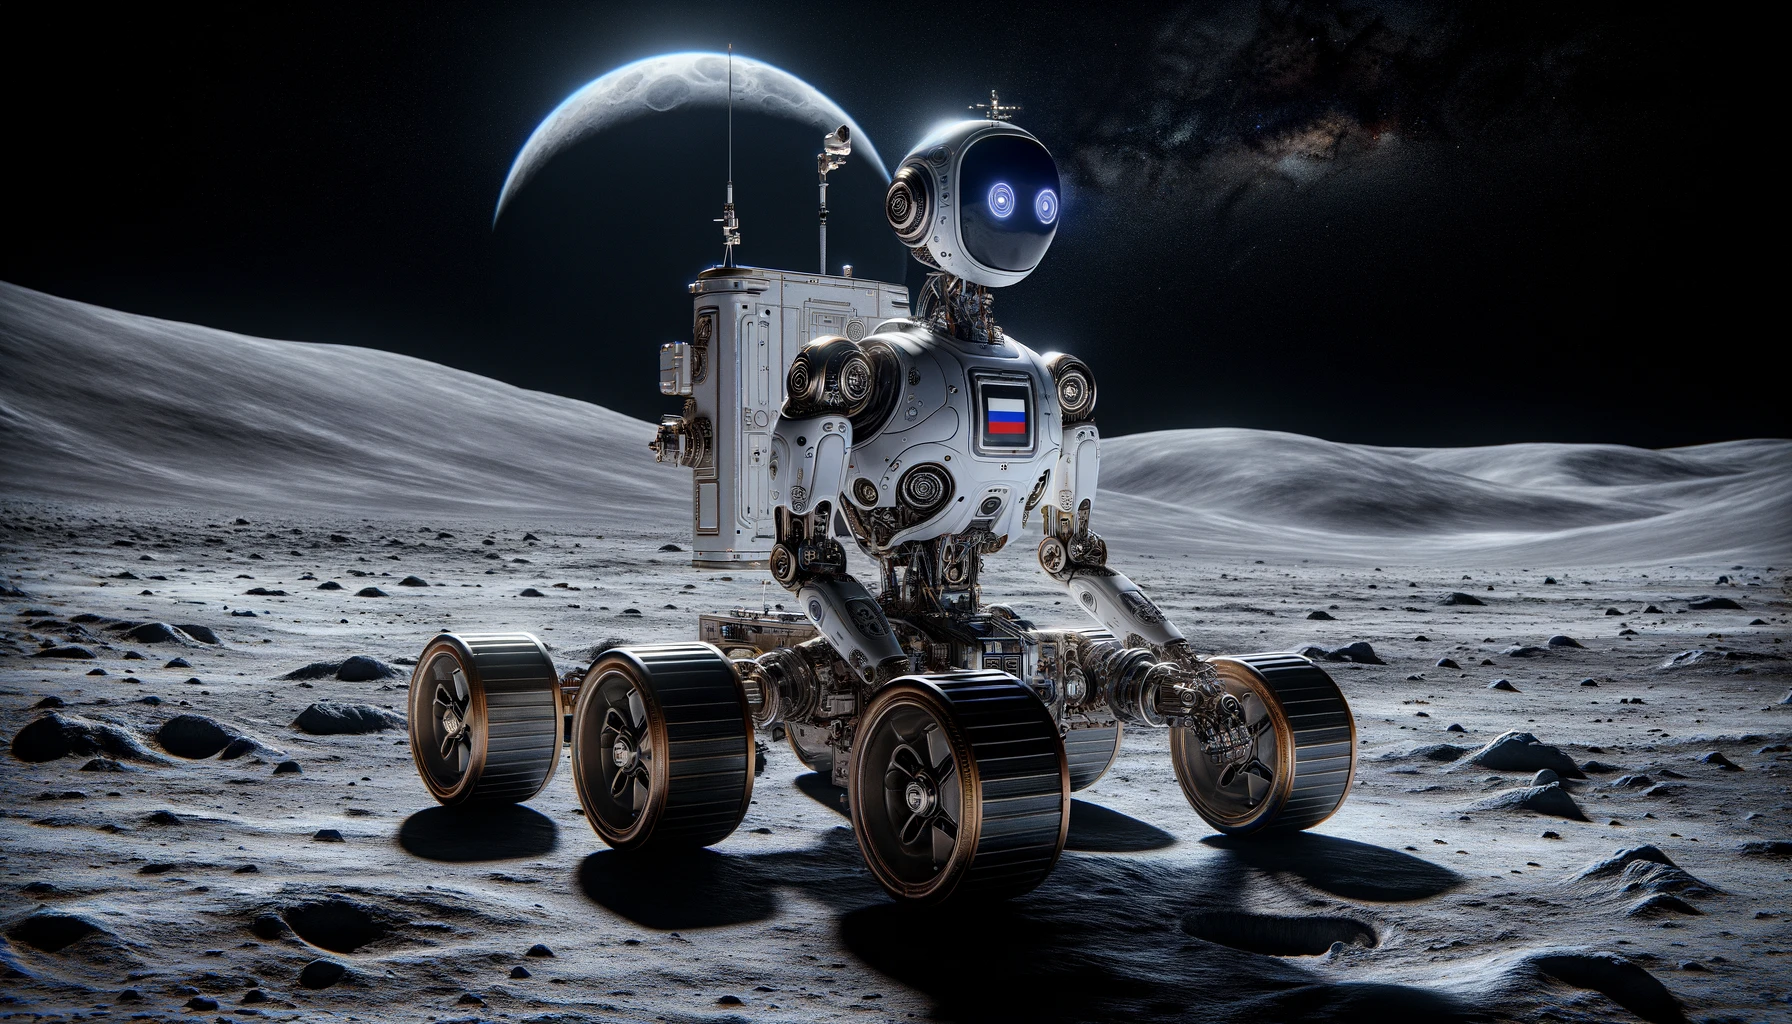 Российского робота-кентавра для исследования Луны показали на фото и вживую